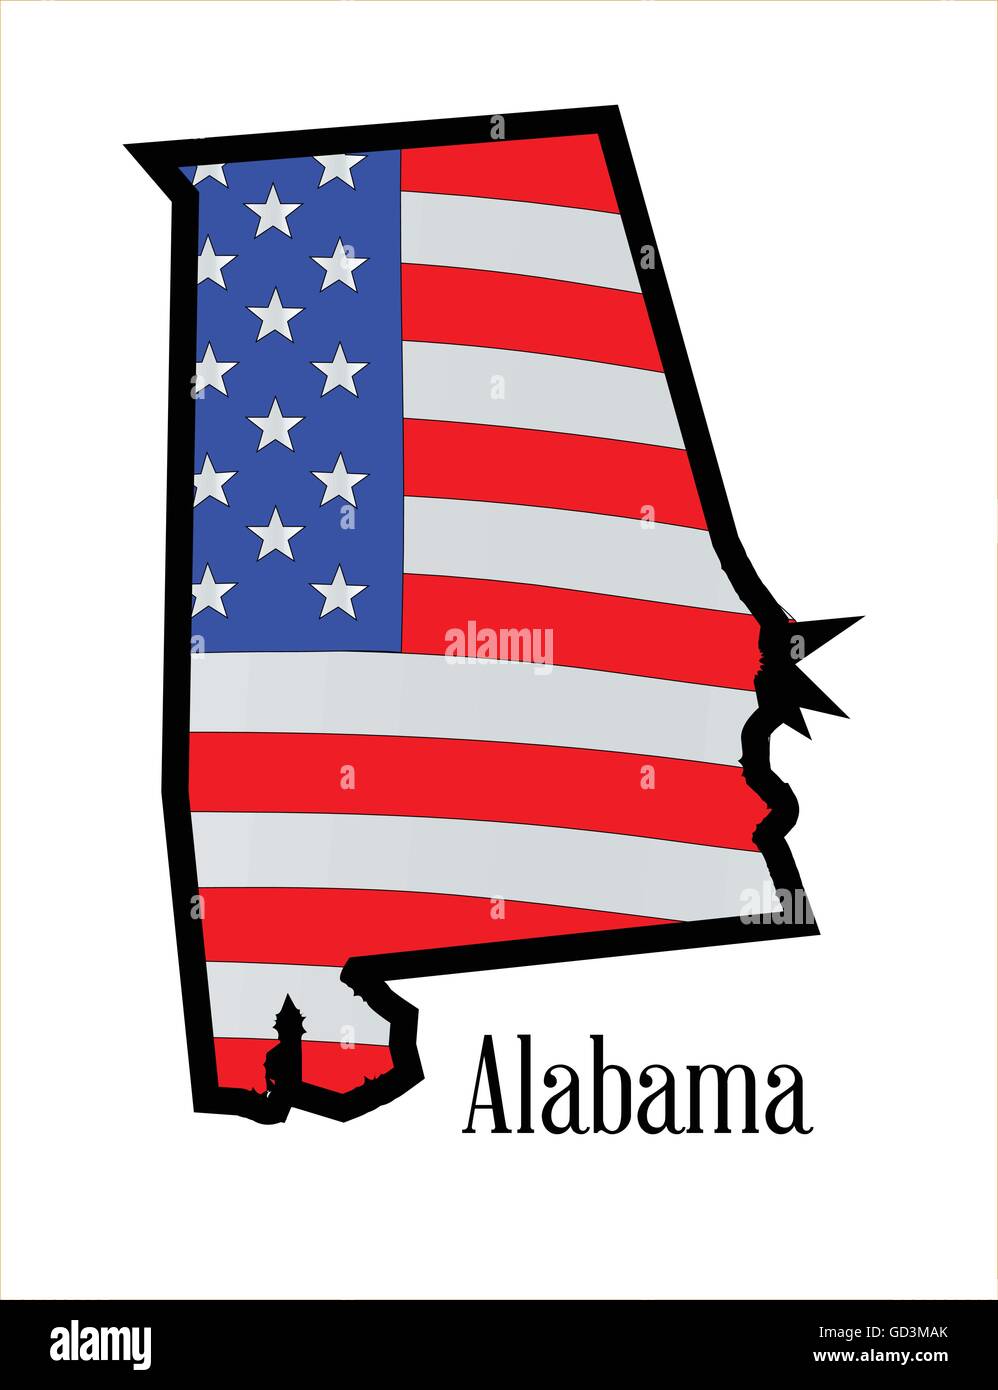 Un drapeau américain, les Stars and Stripes a décrit avec une carte de l'Alabama Illustration de Vecteur